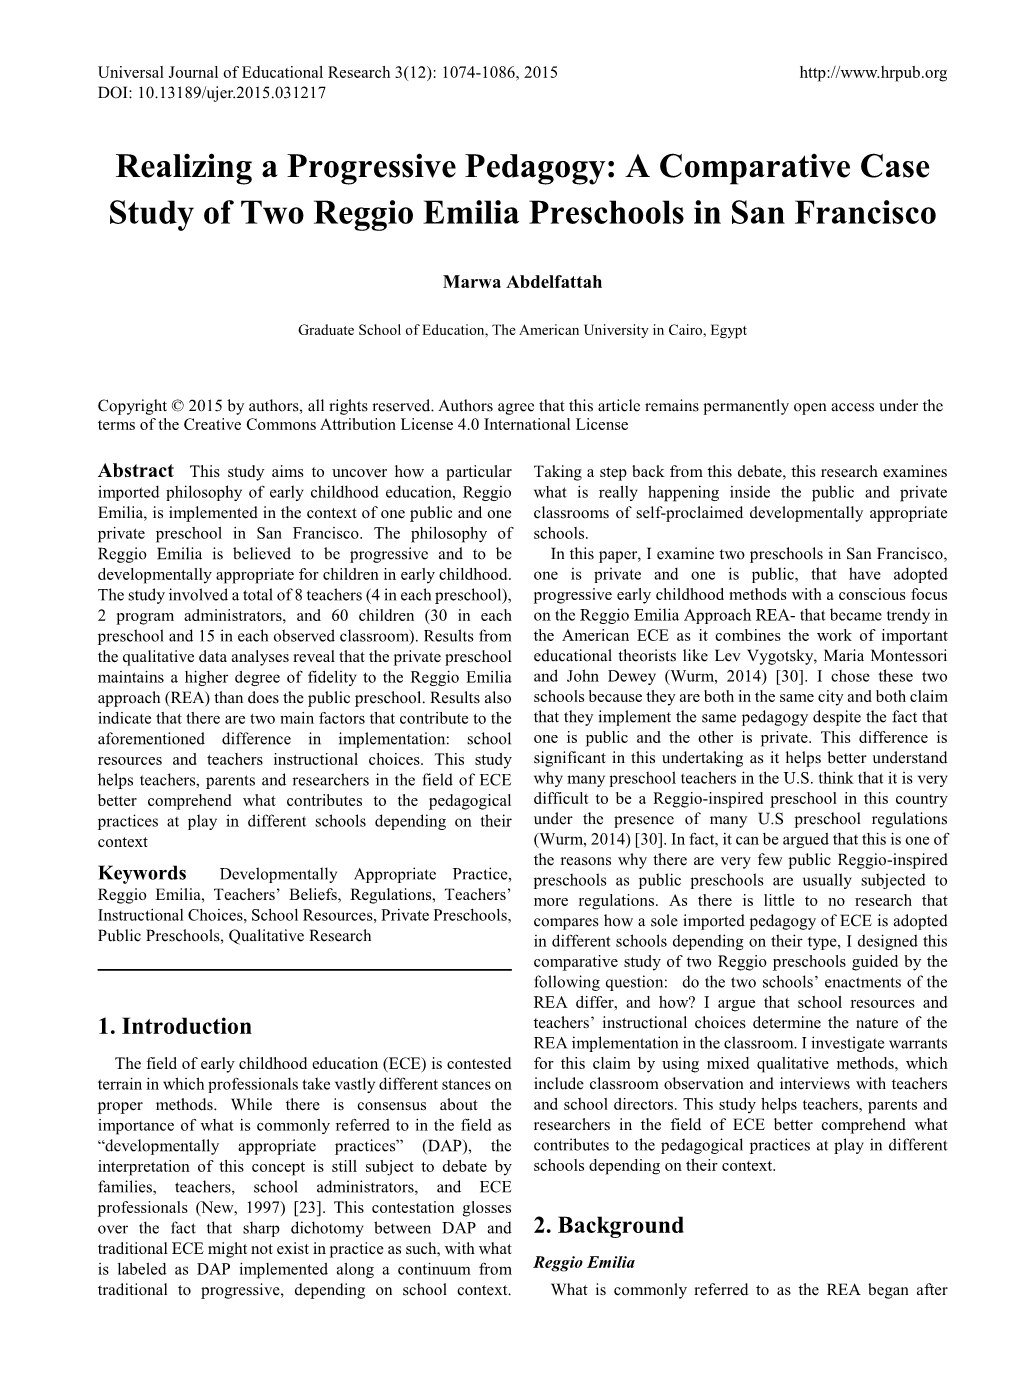 A Comparative Case Study of Two Reggio Emilia Preschools in San Francisco